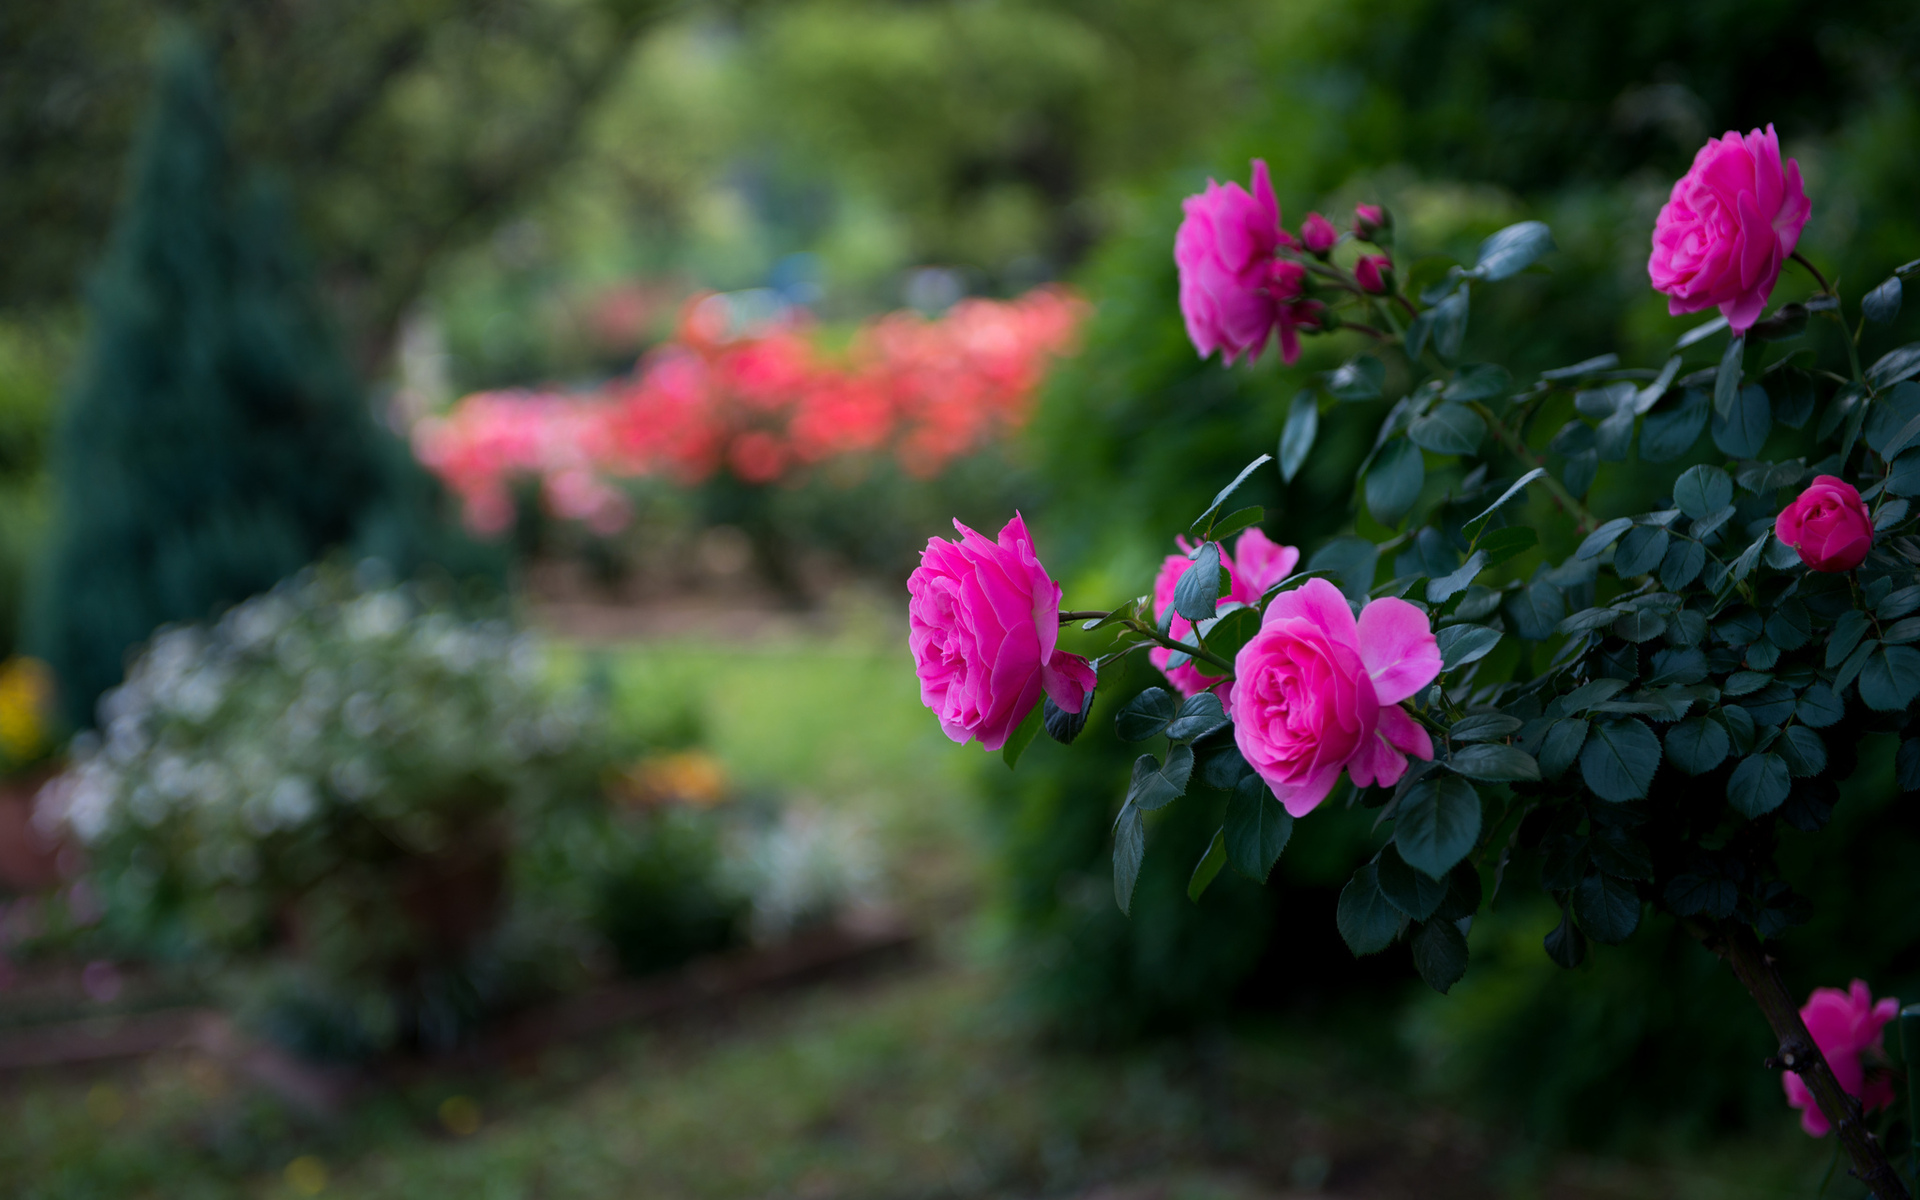 Hãy cùng chiêm ngưỡng những bông hoa hồng tuyệt đẹp, tràn đầy sức sống và tình yêu trong hình ảnh này. Chúng sẽ chạm đến trái tim bạn với những màu sắc tươi tắn và hương thơm ngọt ngào của hoa hồng. Bạn sẽ không muốn bỏ lỡ cơ hội đắm mình trong vẻ đẹp của chúng!